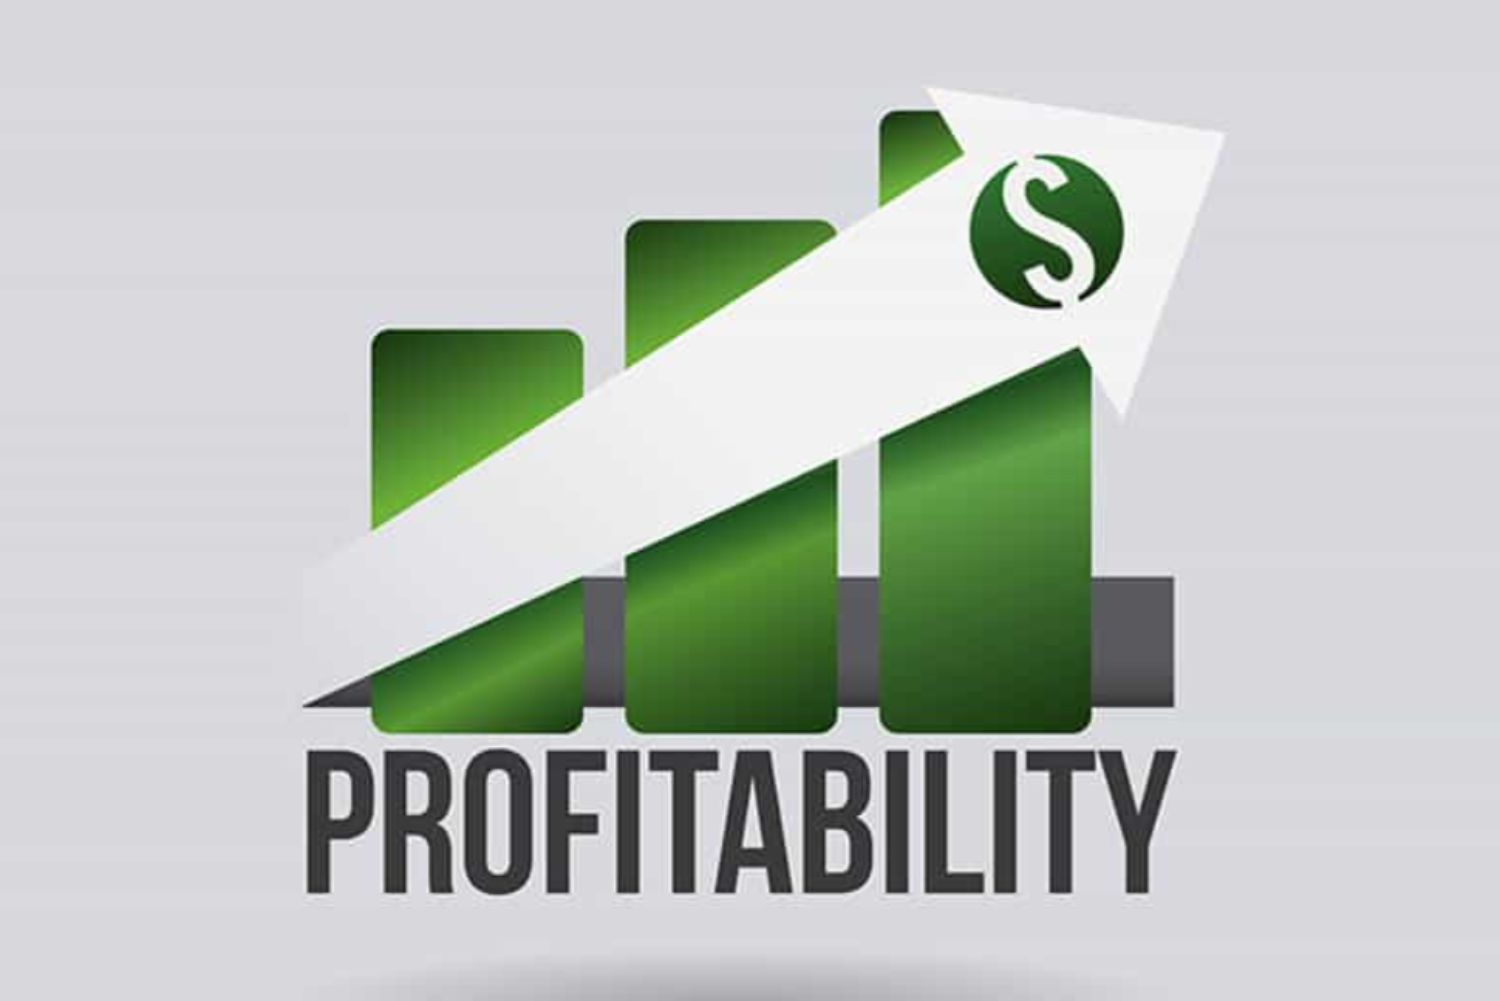 increased profitability